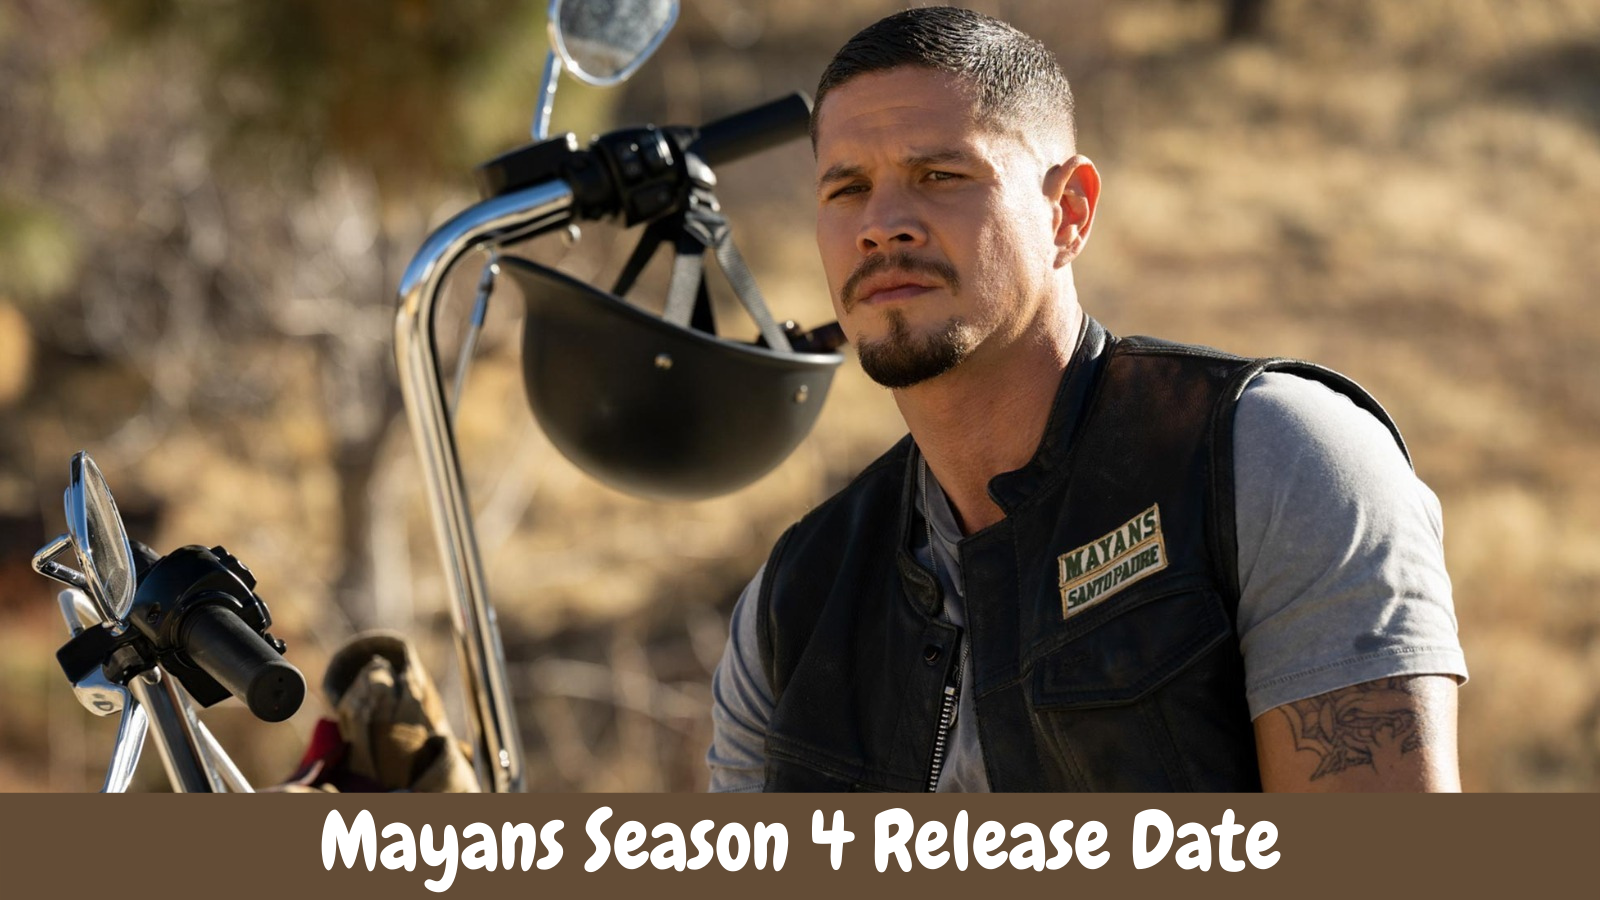 Mayans Season 4 Release Date